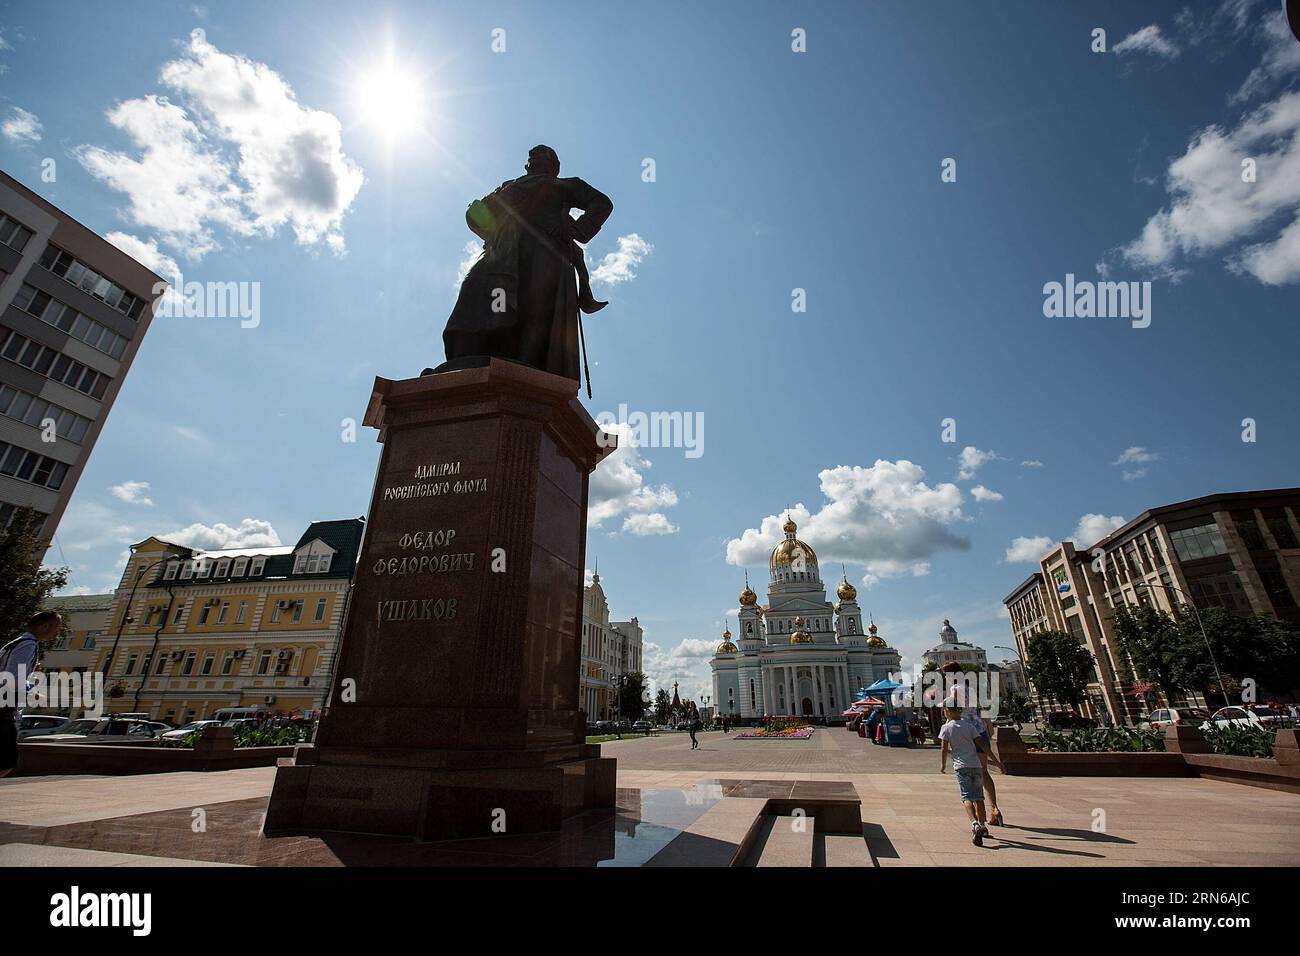 (150717) -- SARANSK, 17. Juli 2015 -- Foto vom 17. Juli 2015 zeigt die Statue von Feodor Uschakow, dem russischen Marinekommandanten und Admiral des 18. Jahrhunderts, in Saransk, Russland. Russland wird 2018 Austragungsort des Fußballturniers der FIFA-Weltmeisterschaft sein. )(wll) (SP)RUSSLAND-SARANSK-FIFA-WELTCUPSTADT LixMing PUBLICATIONxNOTxINxCHN 150717 Saransk 17. Juli 2015 Foto aufgenommen AM 17. Juli 2015 zeigt die Statue von Feodor Uschakow, dem russischen Marineführer und Admiral des 18. Jahrhunderts in Saransk Russland wird das FIFA-Fußballweltmeisterschaft 2018 wll SP Russland ausrichten Saransk FIFA-Weltmeisterschaft Stadt L Stockfoto